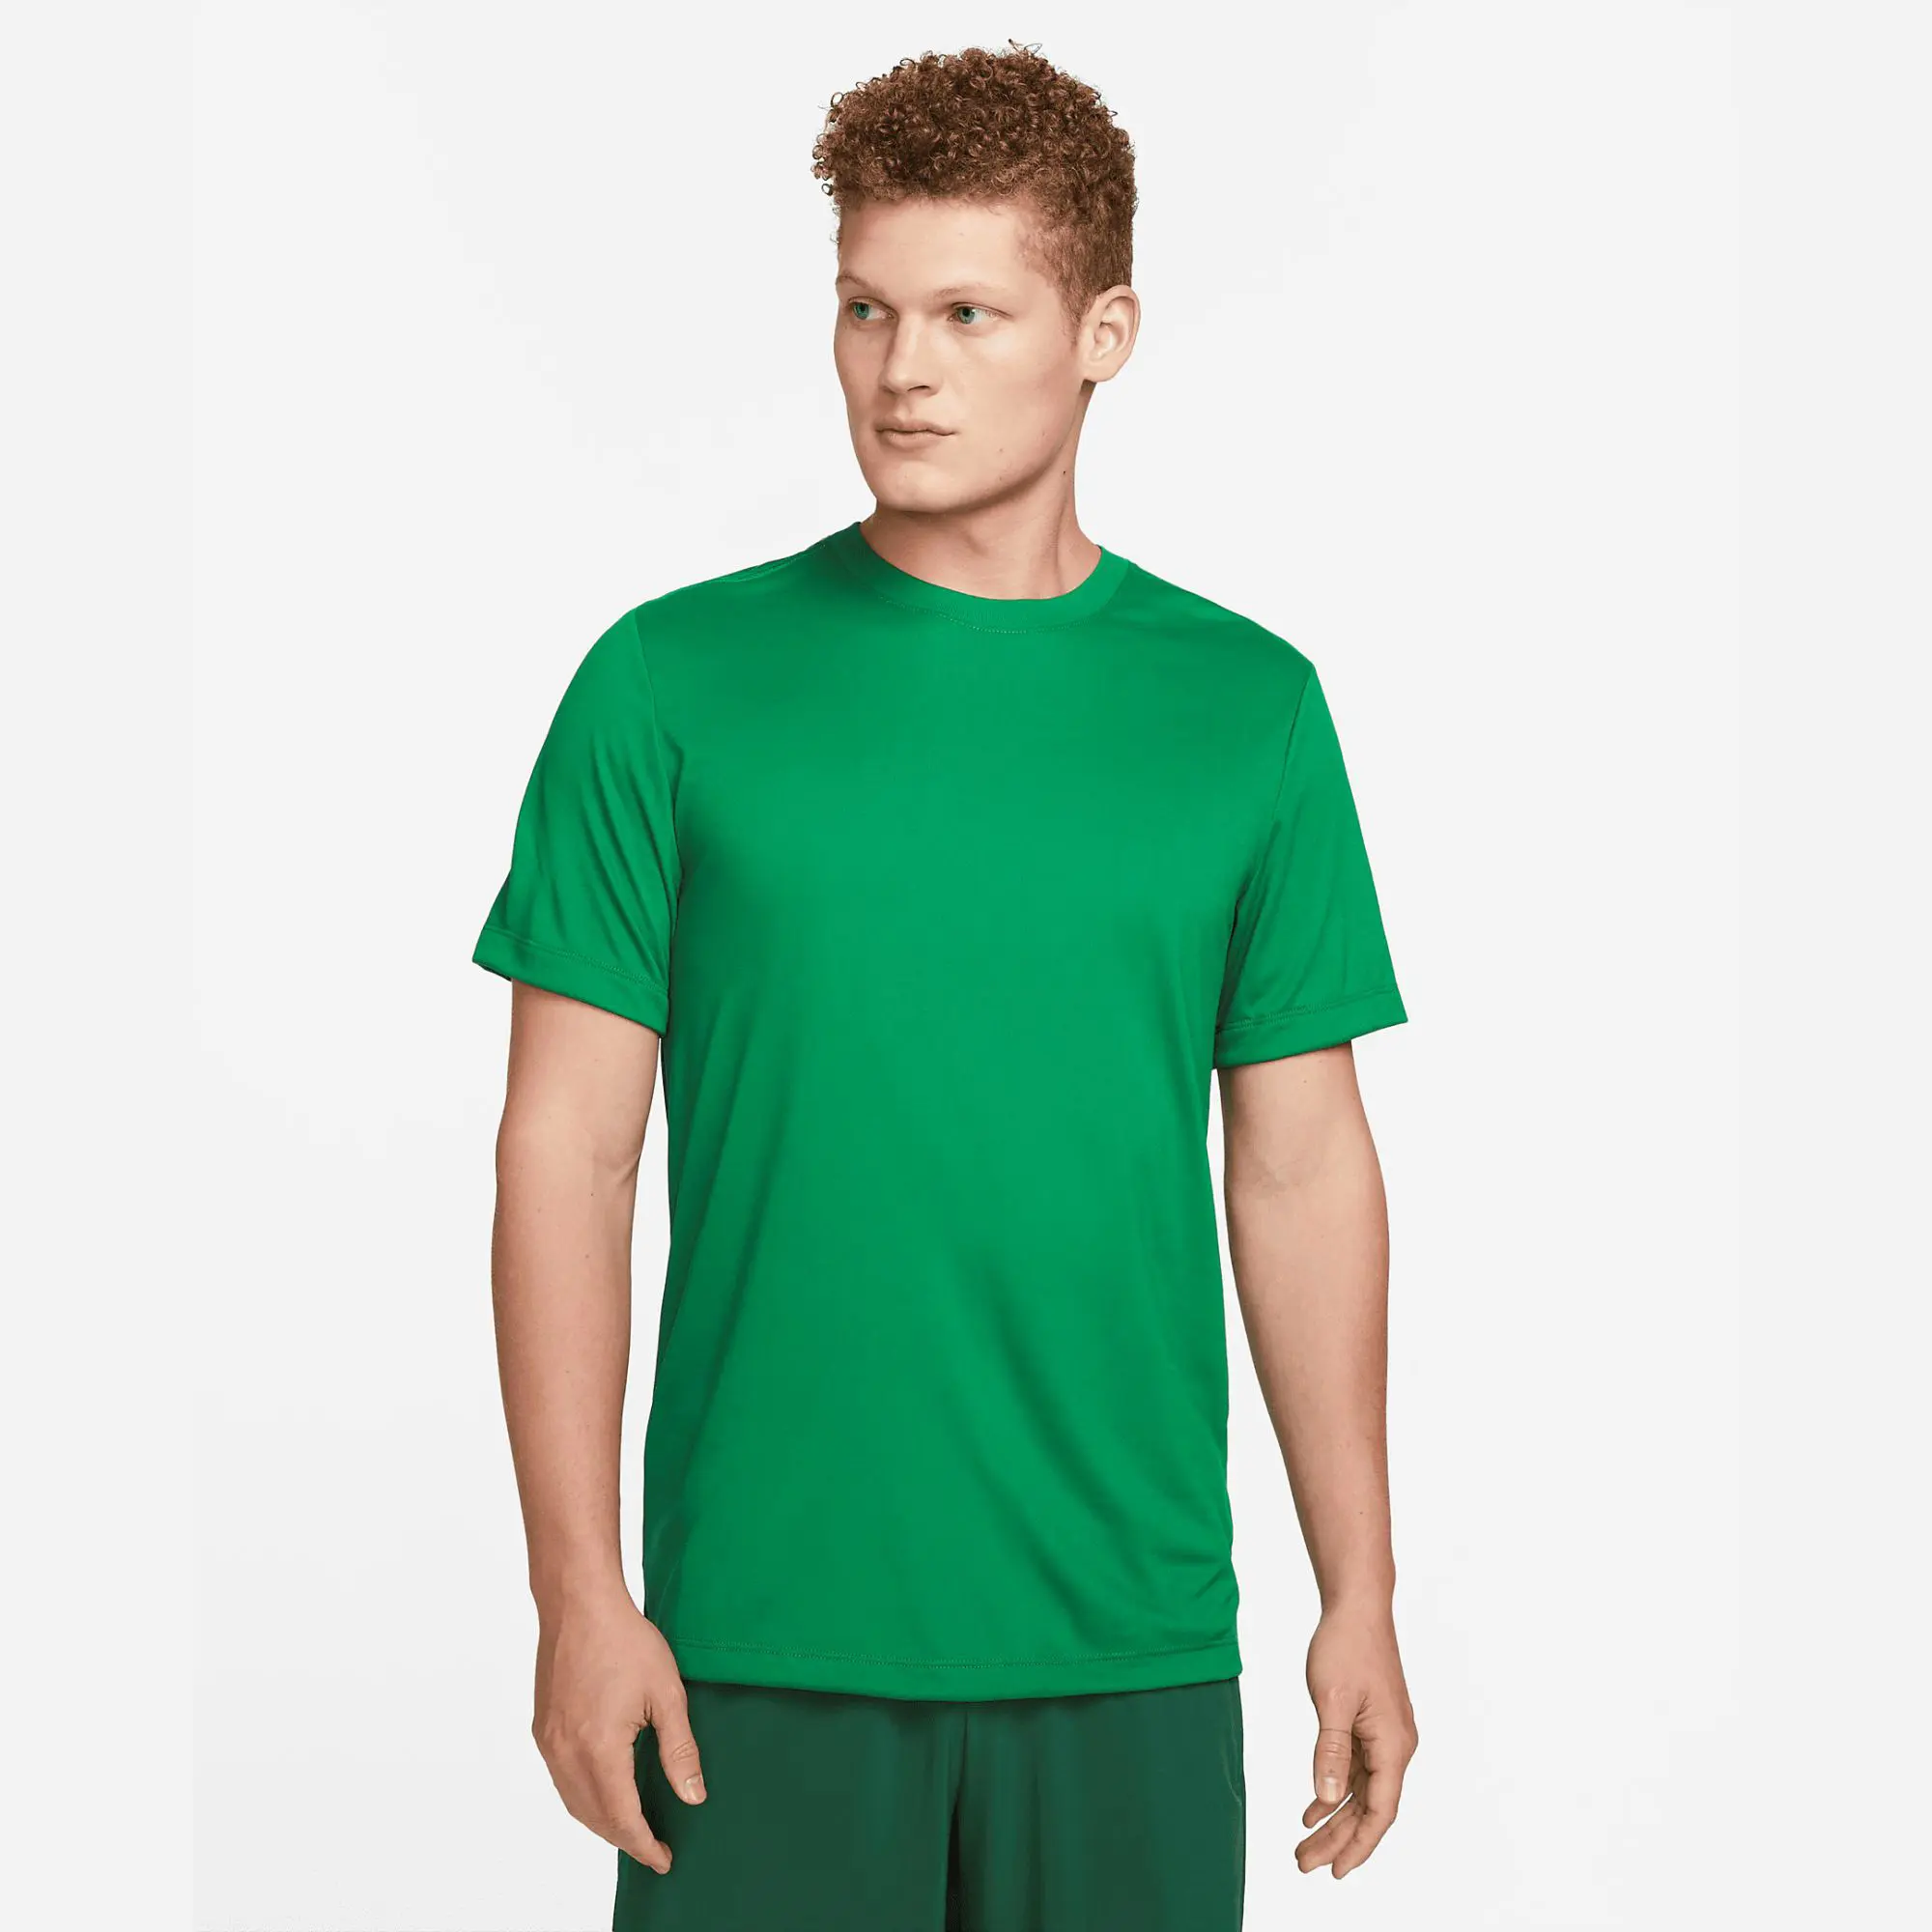 Camiseta deportiva XL para hombre, 100%, poliéster, verde pino, jersey de tela, ajuste estándar relajado con patrón de estampado de banda acanalada para el cuello